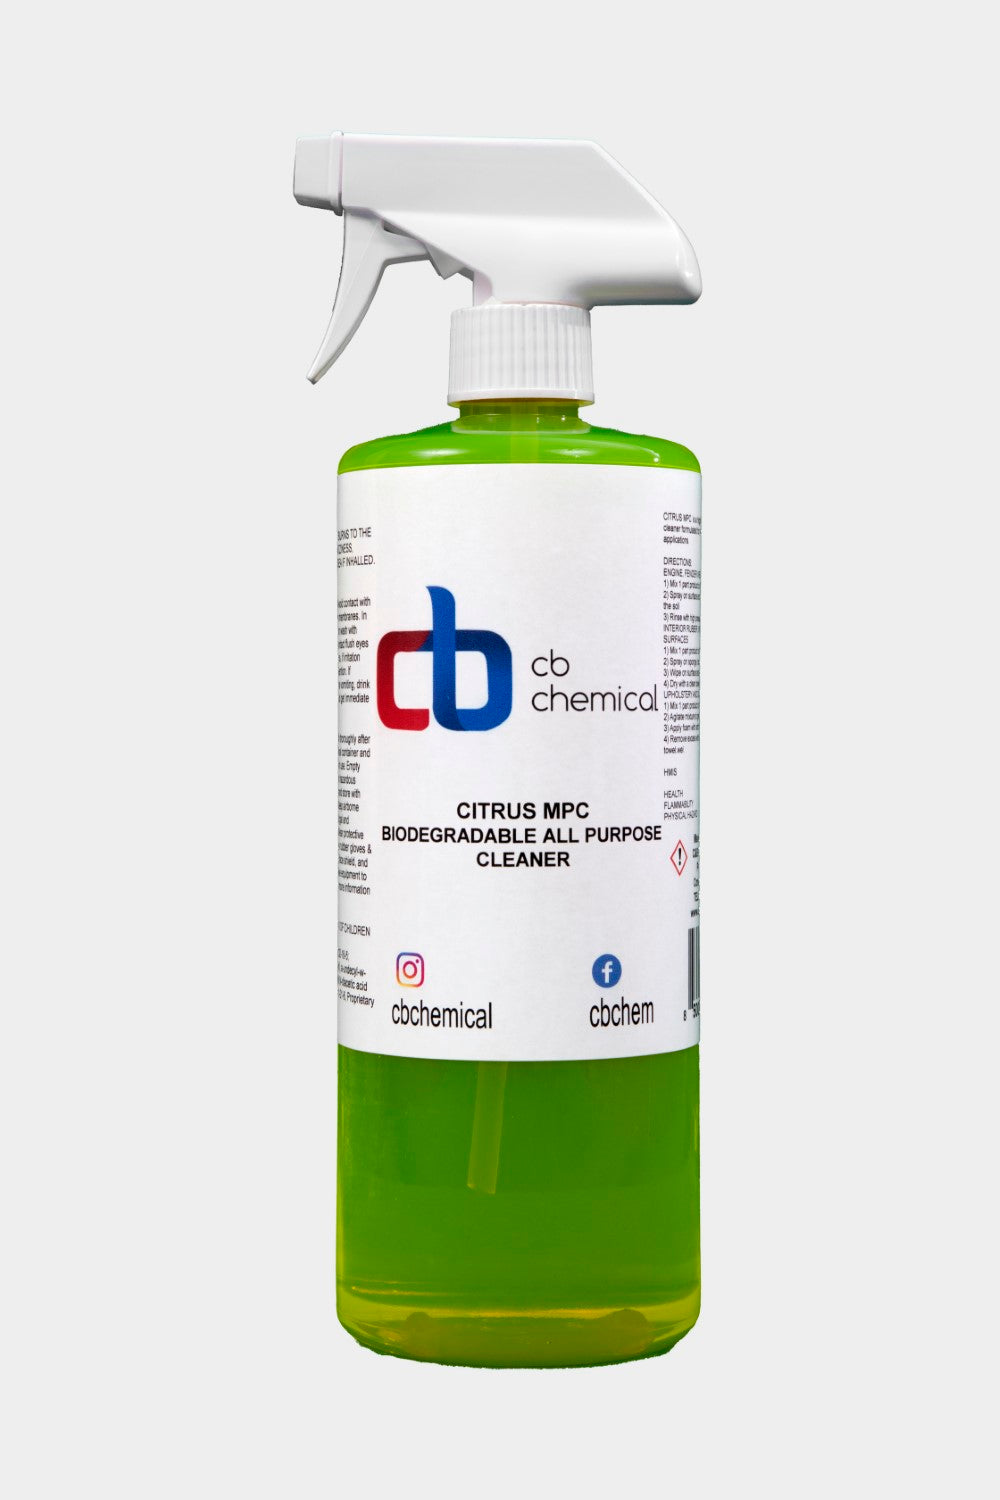 Citrus MPC - C & B Chemical, Inc